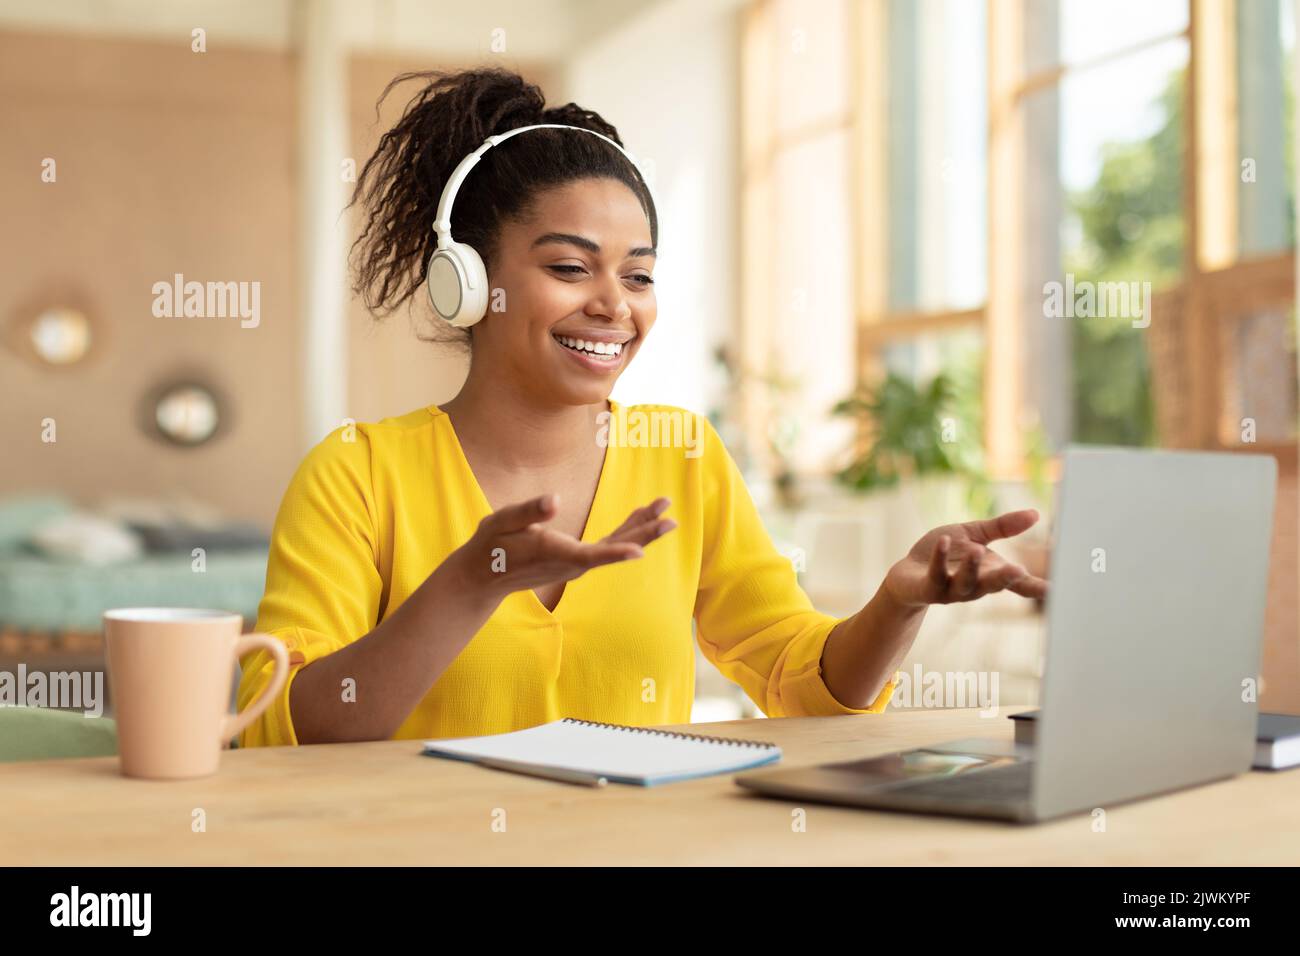 Bonne dame noire dans le casque sans fil appels vidéo via ordinateur portable, communiquant avec un ami ou un étudiant distant Banque D'Images